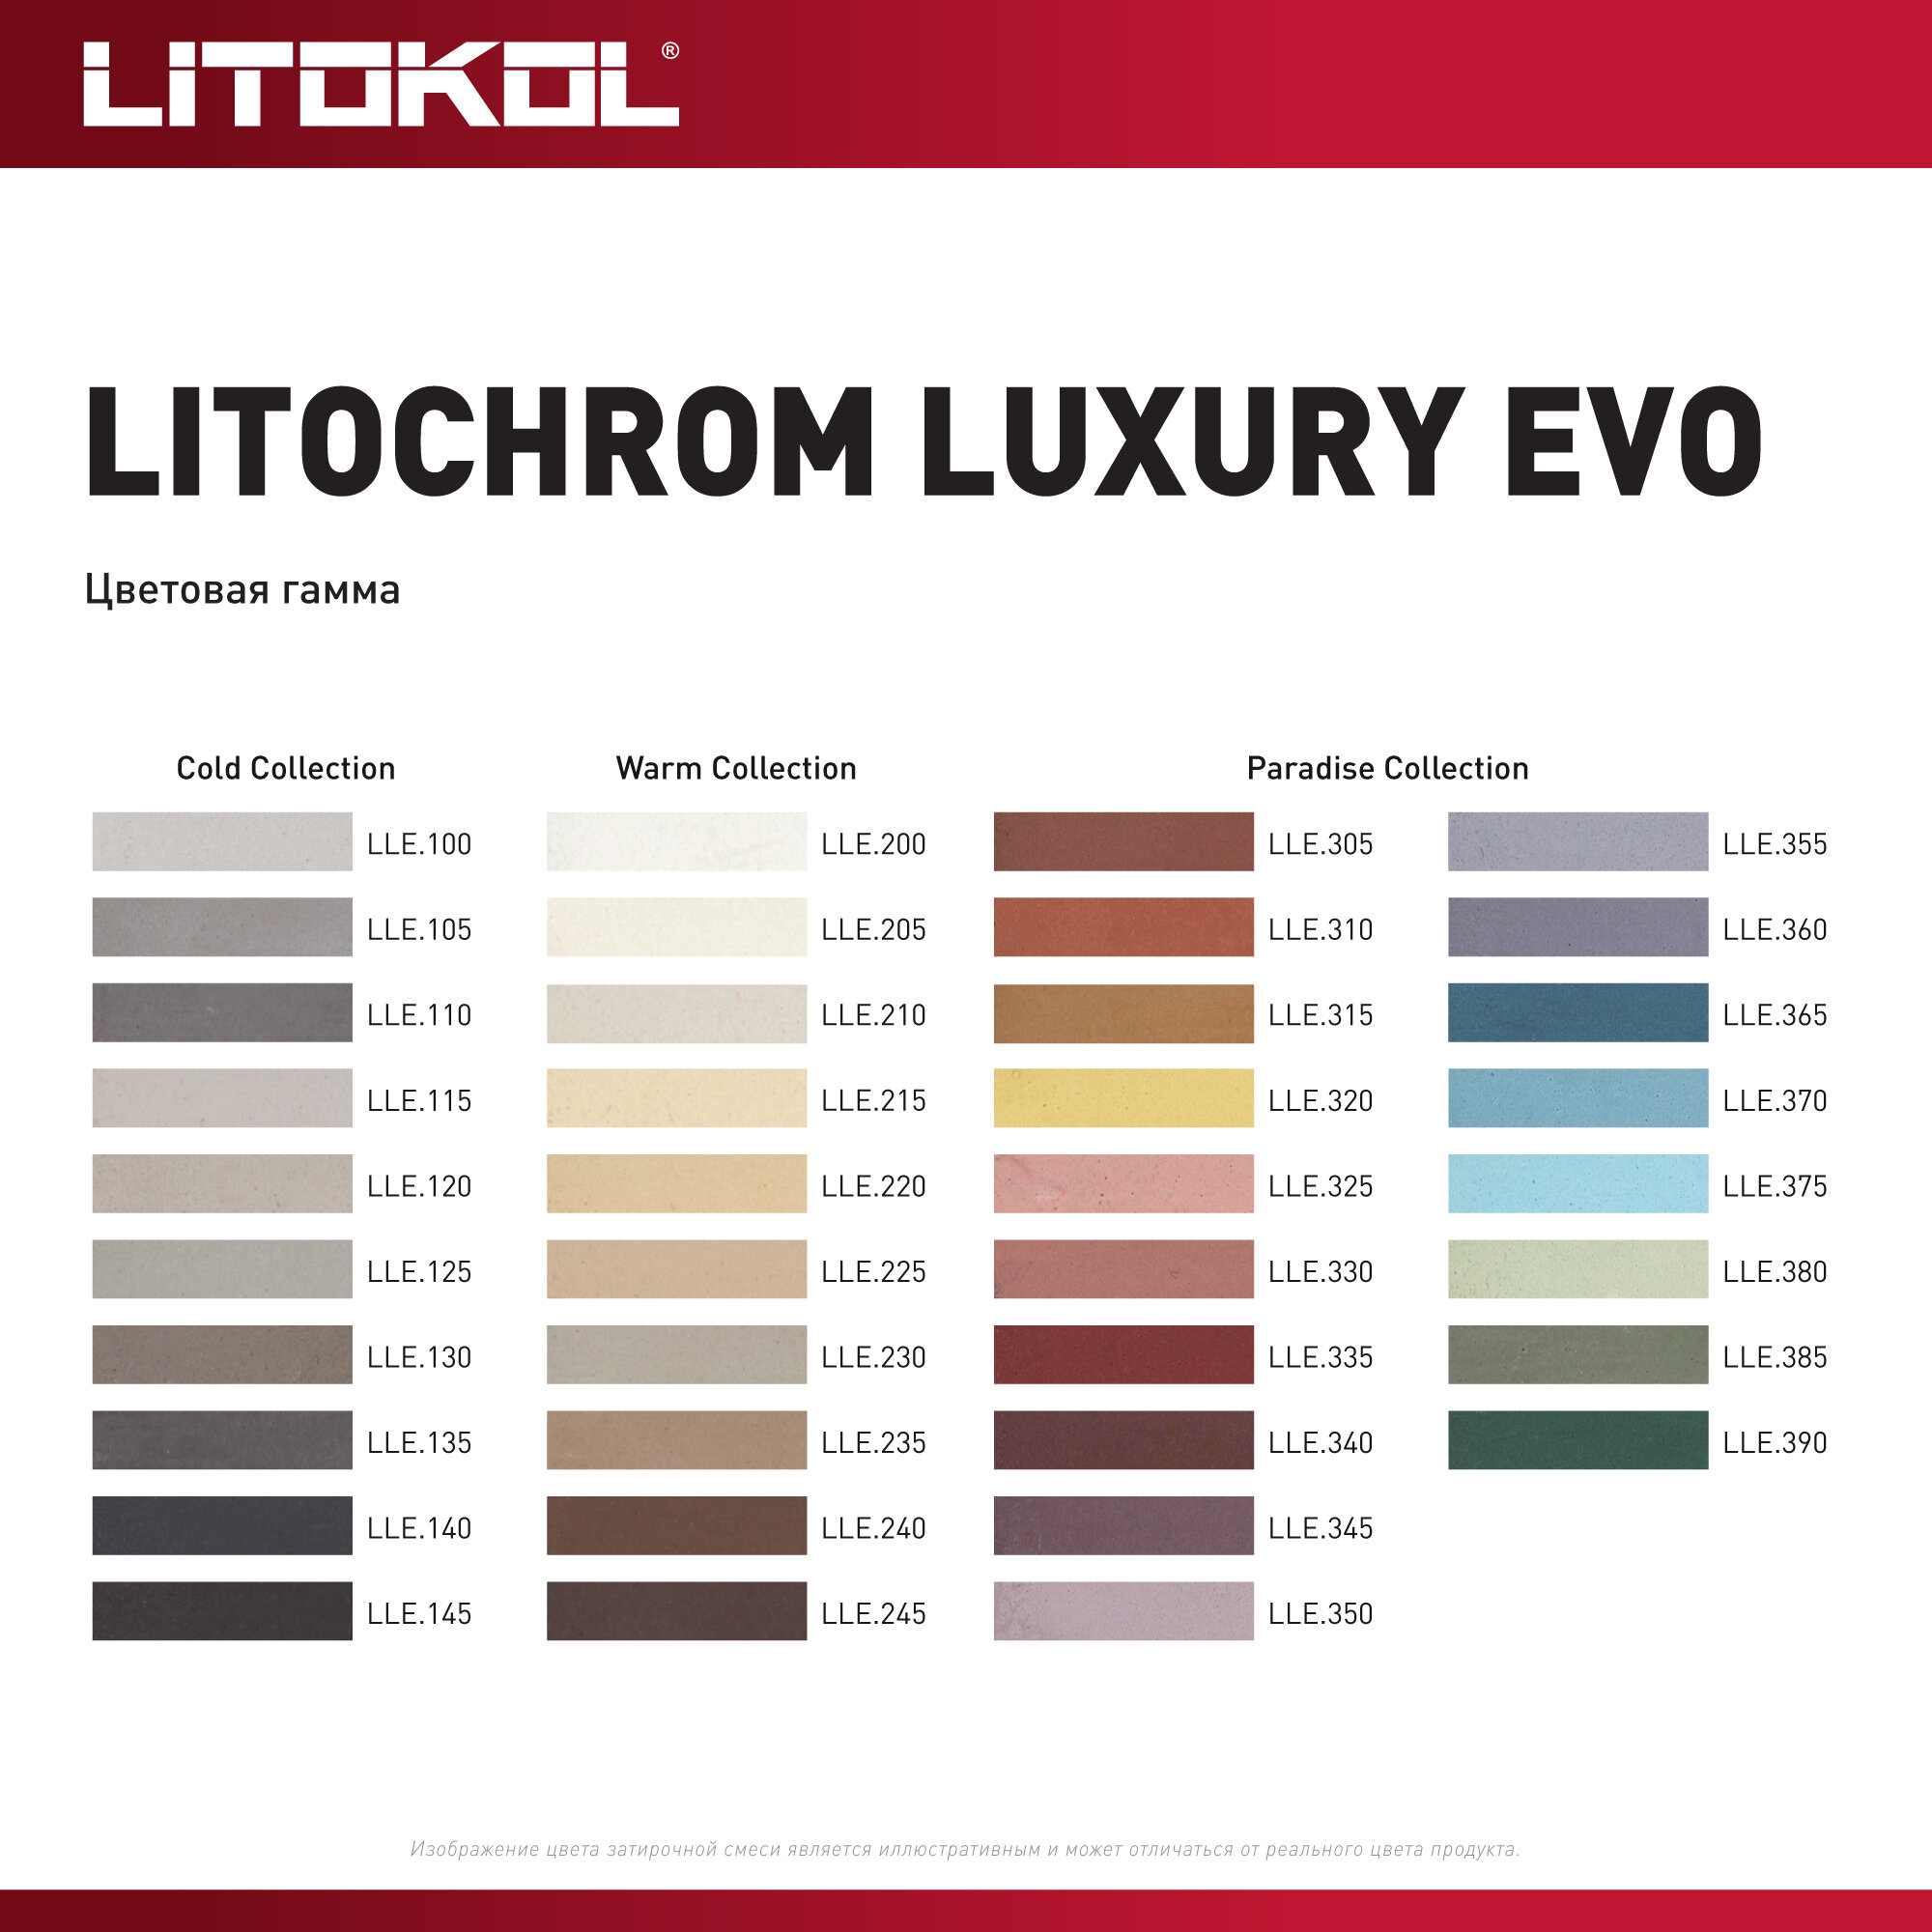 Затирка цементная LITOKOL LITOCHROM LUXURY EVO LLE 145, цвет черный уголь, 2 кг